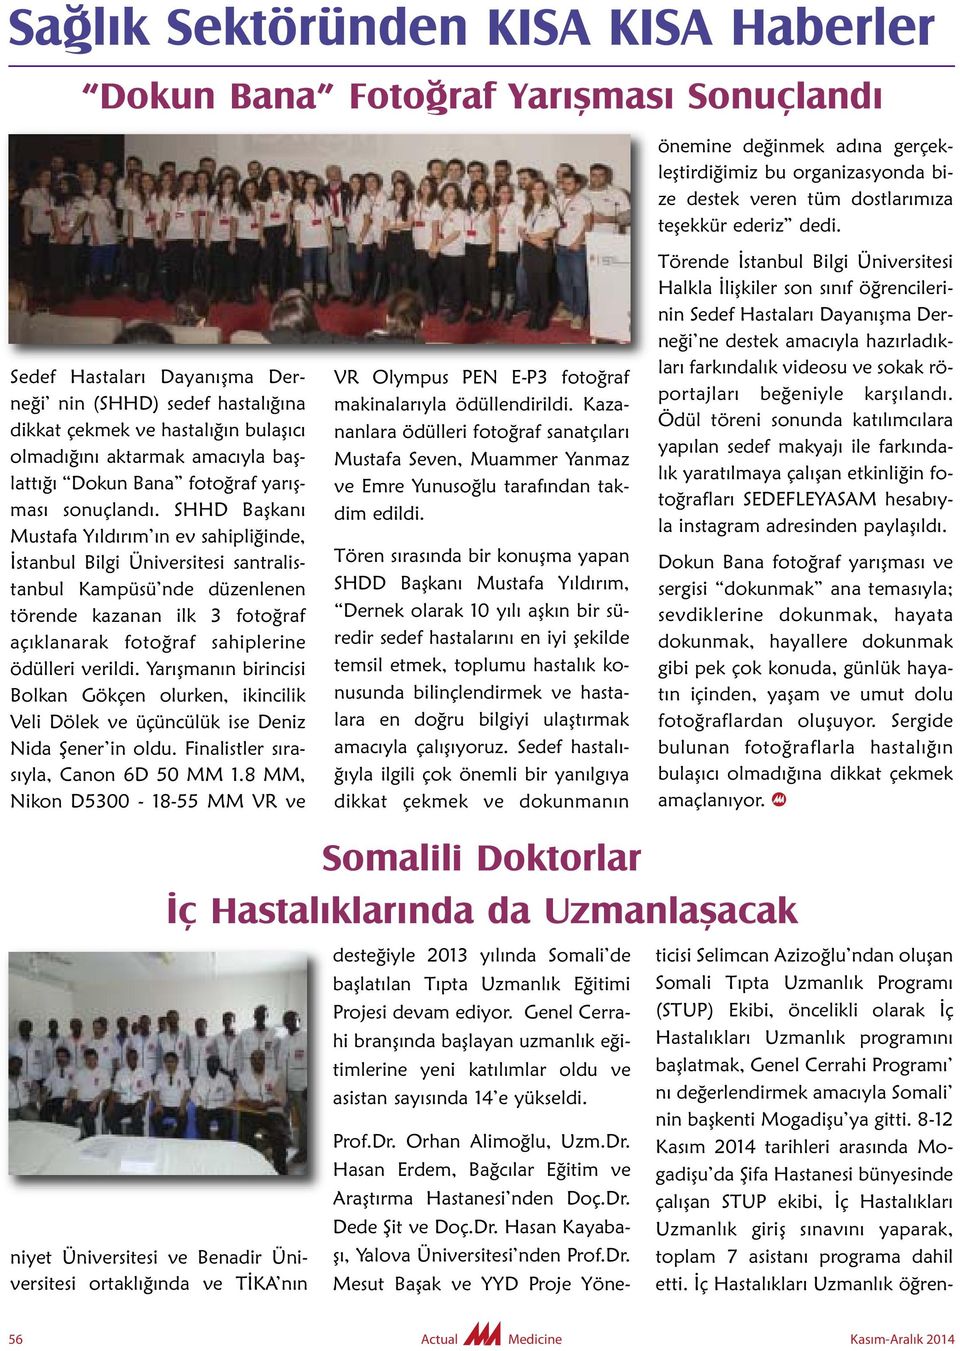 SHHD Başkanı Mustafa Yıldırım ın ev sahipliğinde, İstanbul Bilgi Üniversitesi santralistanbul Kam püsü nde düzenlenen törende kazanan ilk 3 fotoğraf açıklanarak fotoğraf sahiplerine ödülleri verildi.